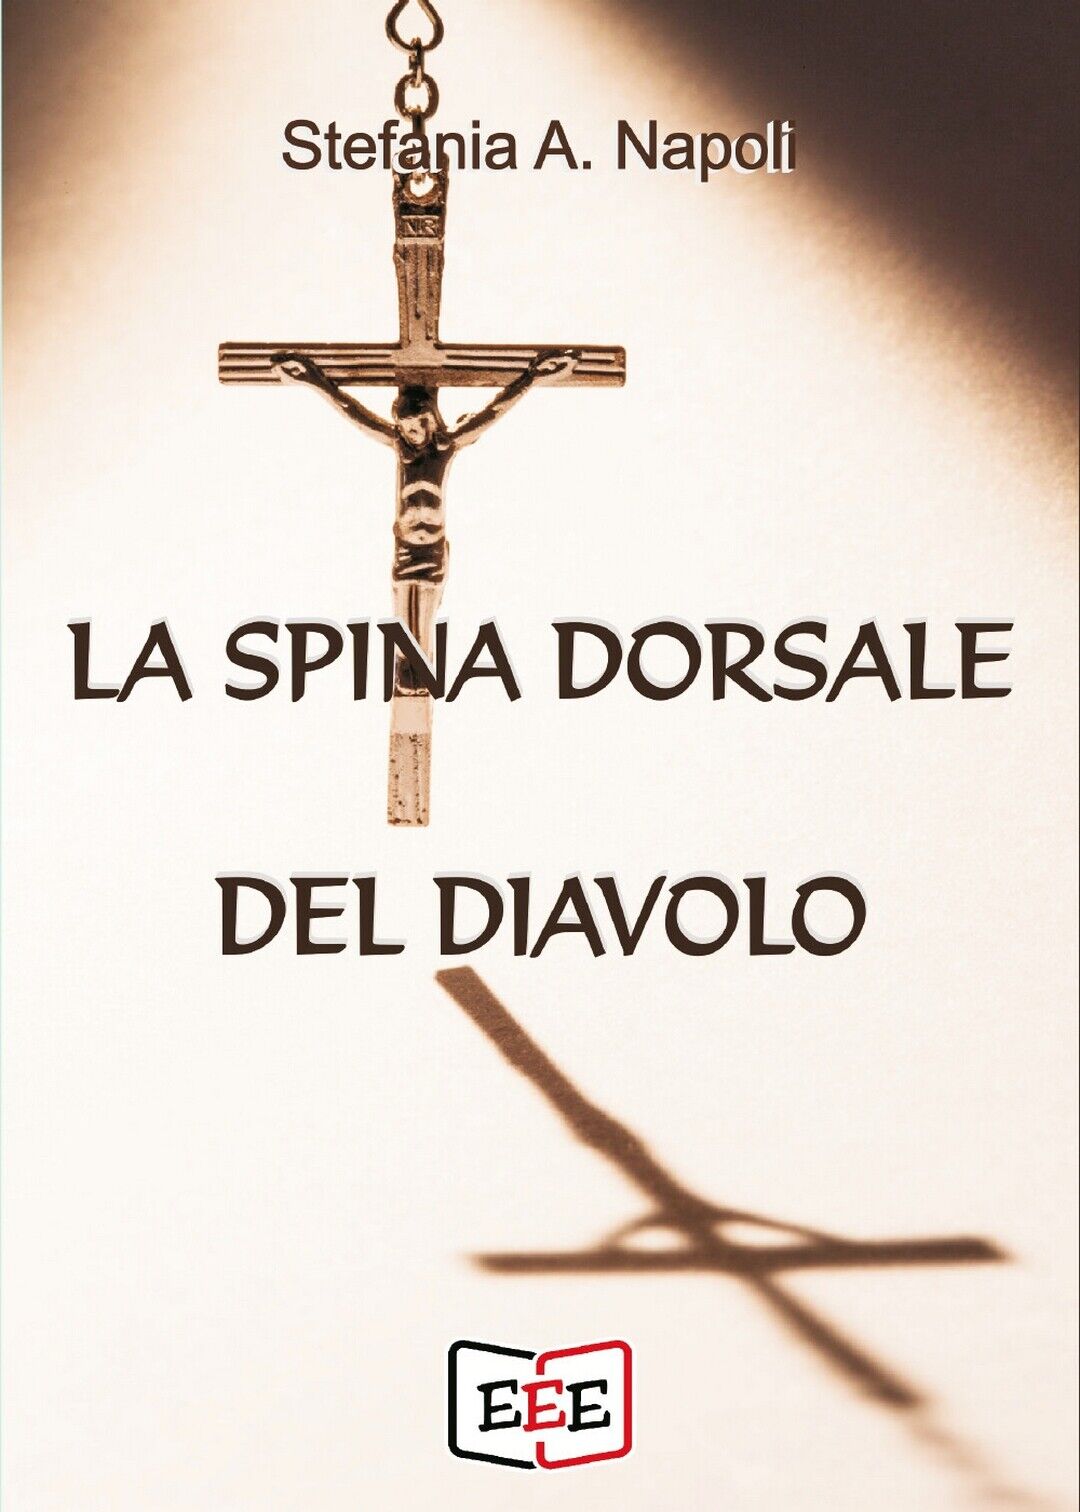 La spina dorsale del diavolo  di Stefania A. Napoli,  2020,  Eee - Edizioni libro usato